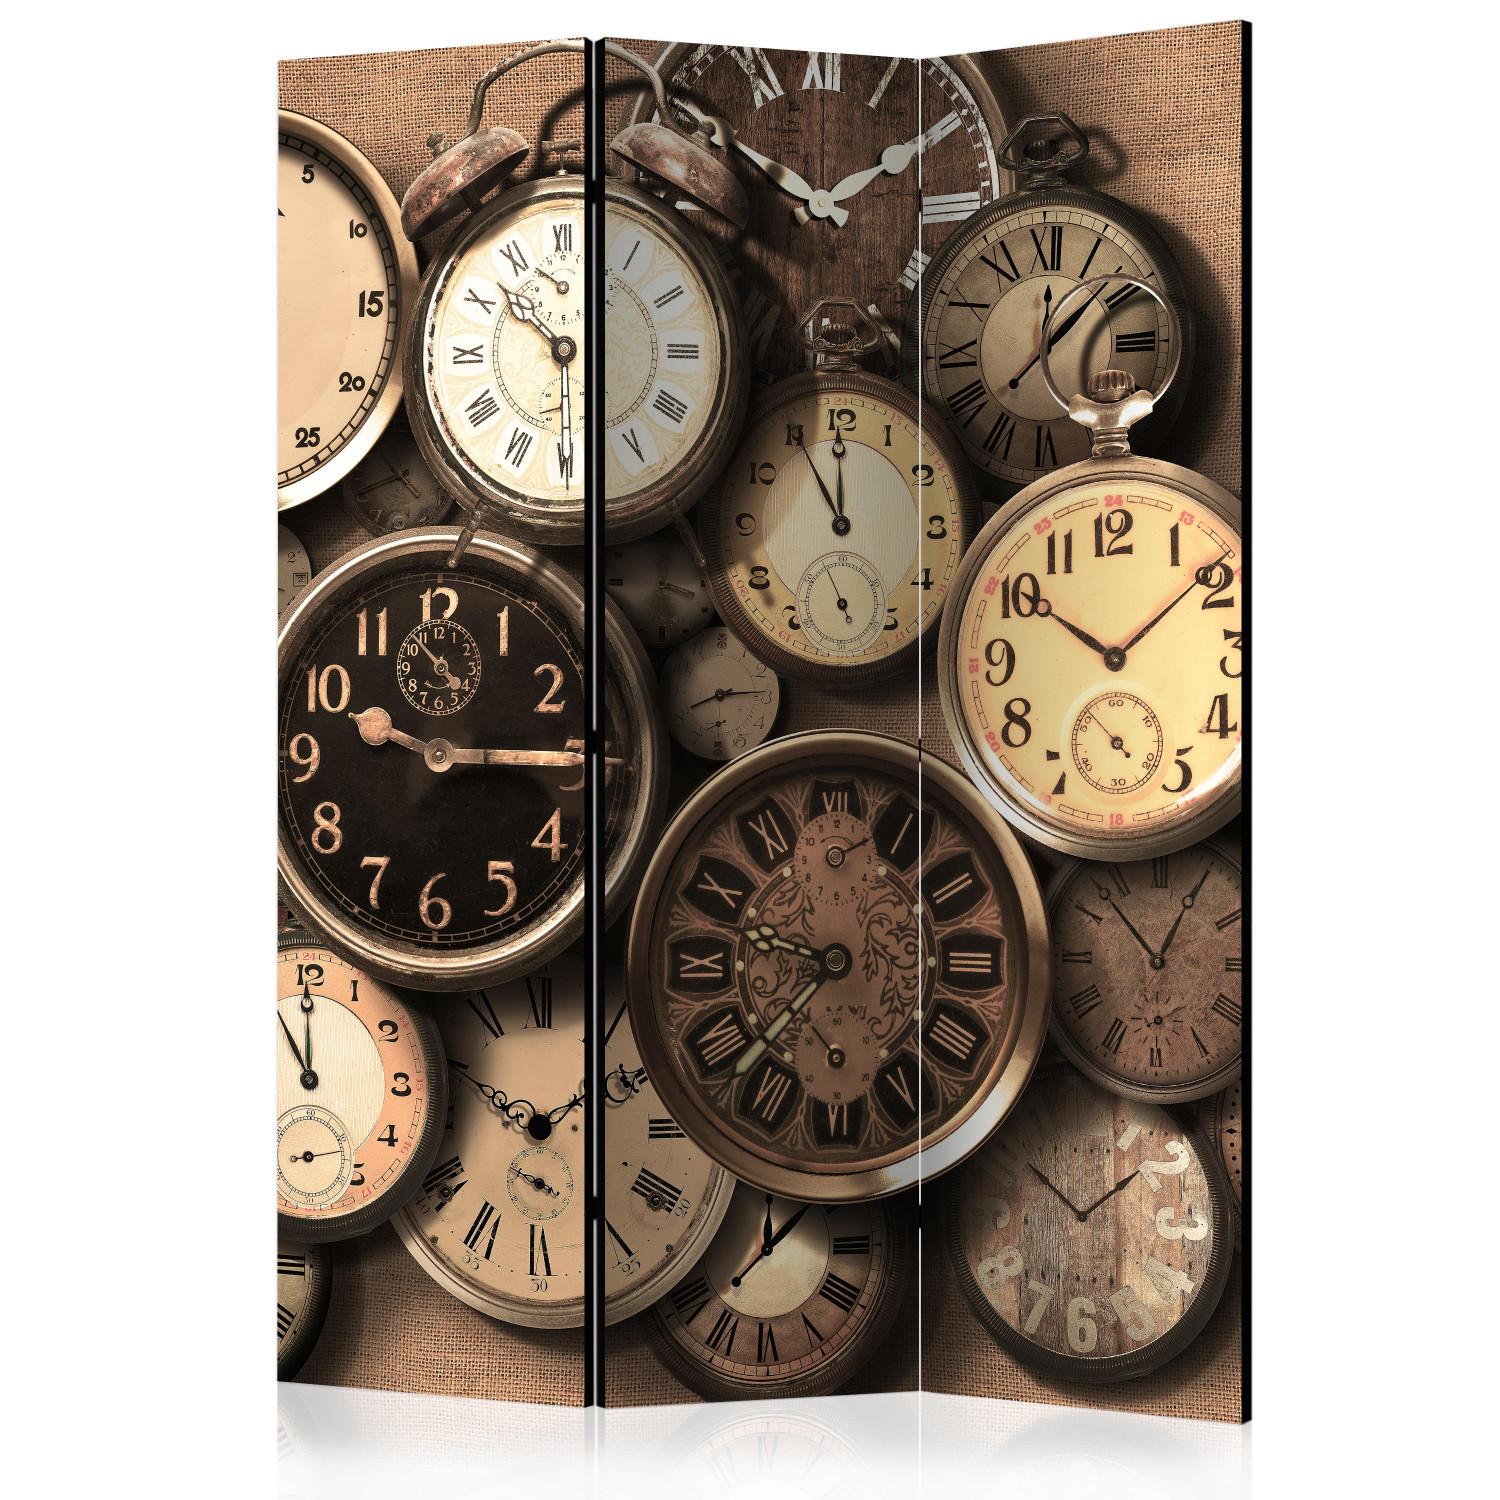 Biombo Relojes antiguos (3 partes): números y manecillas en esferas retro